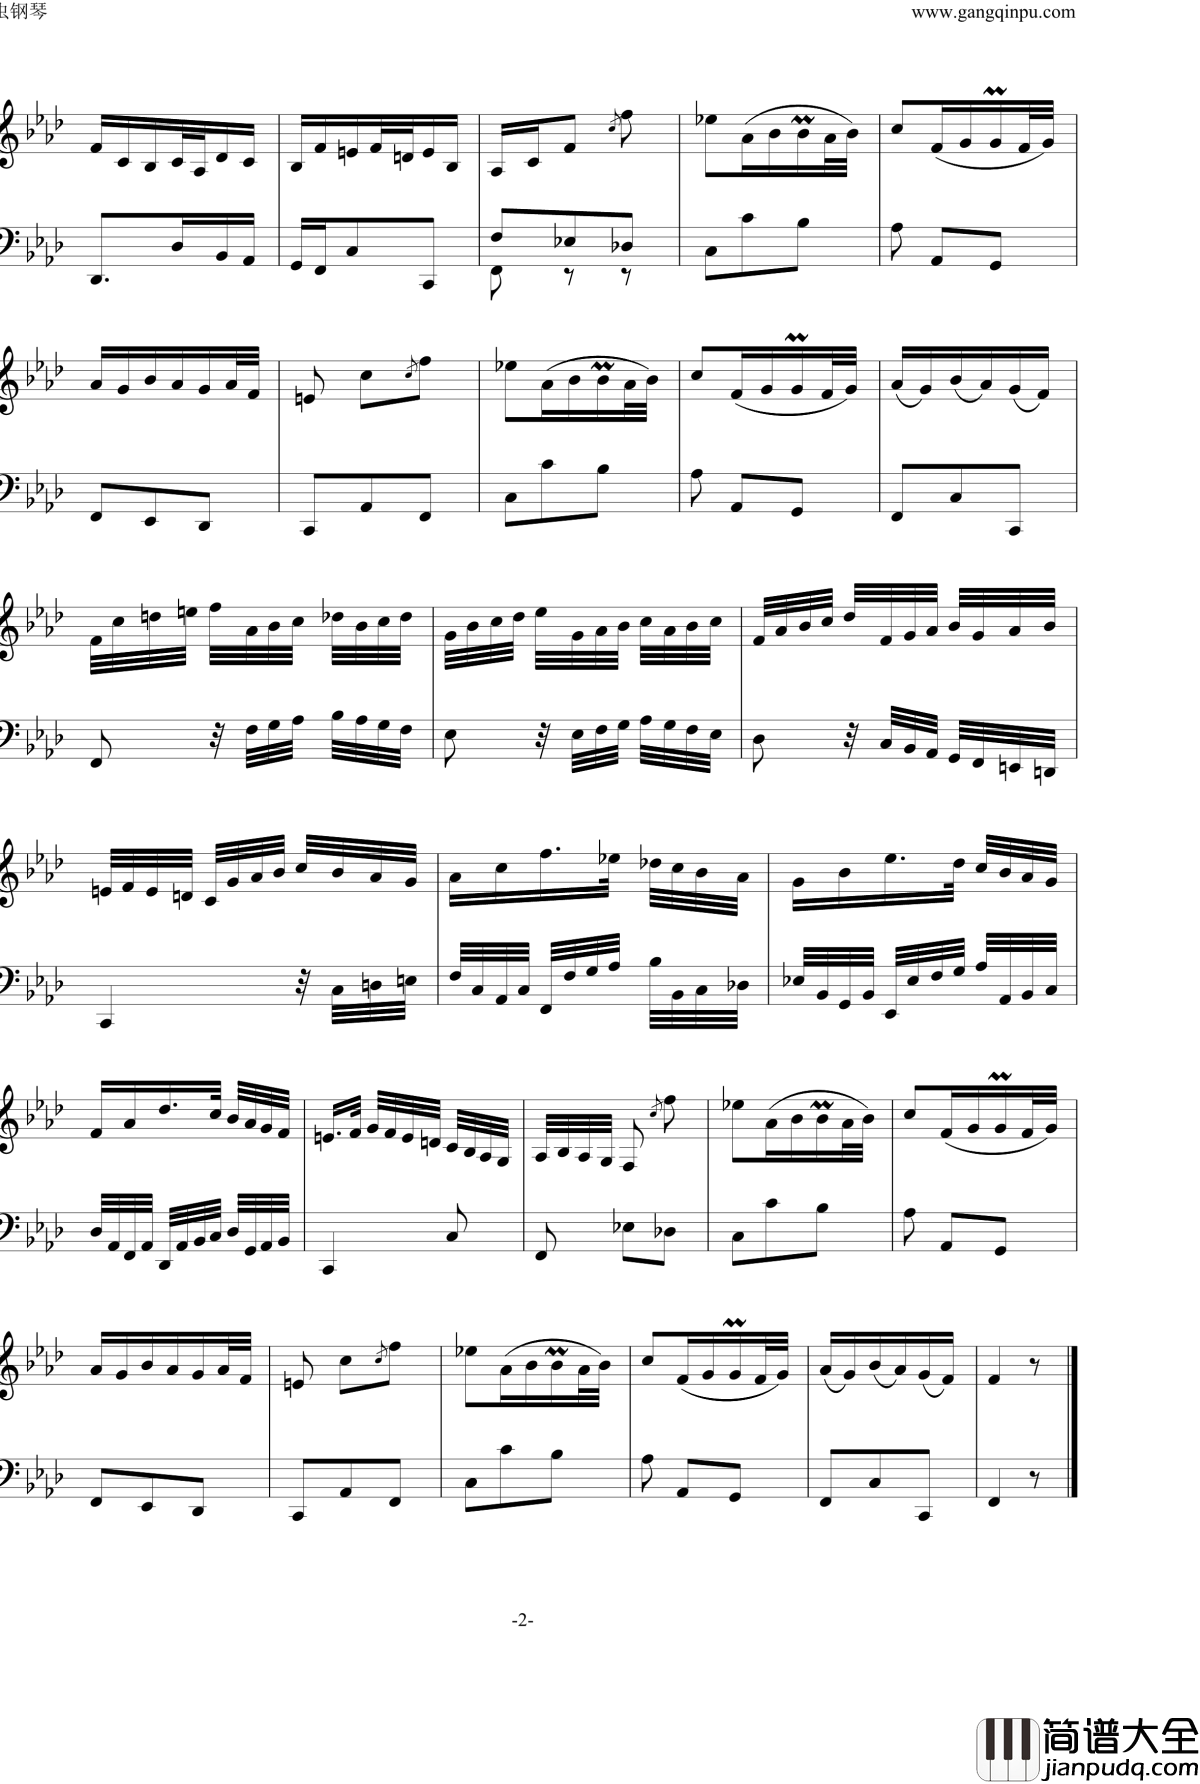 BWV823_No.1前奏曲钢琴谱_巴赫初级钢琴曲集最后一首_P.E.Bach